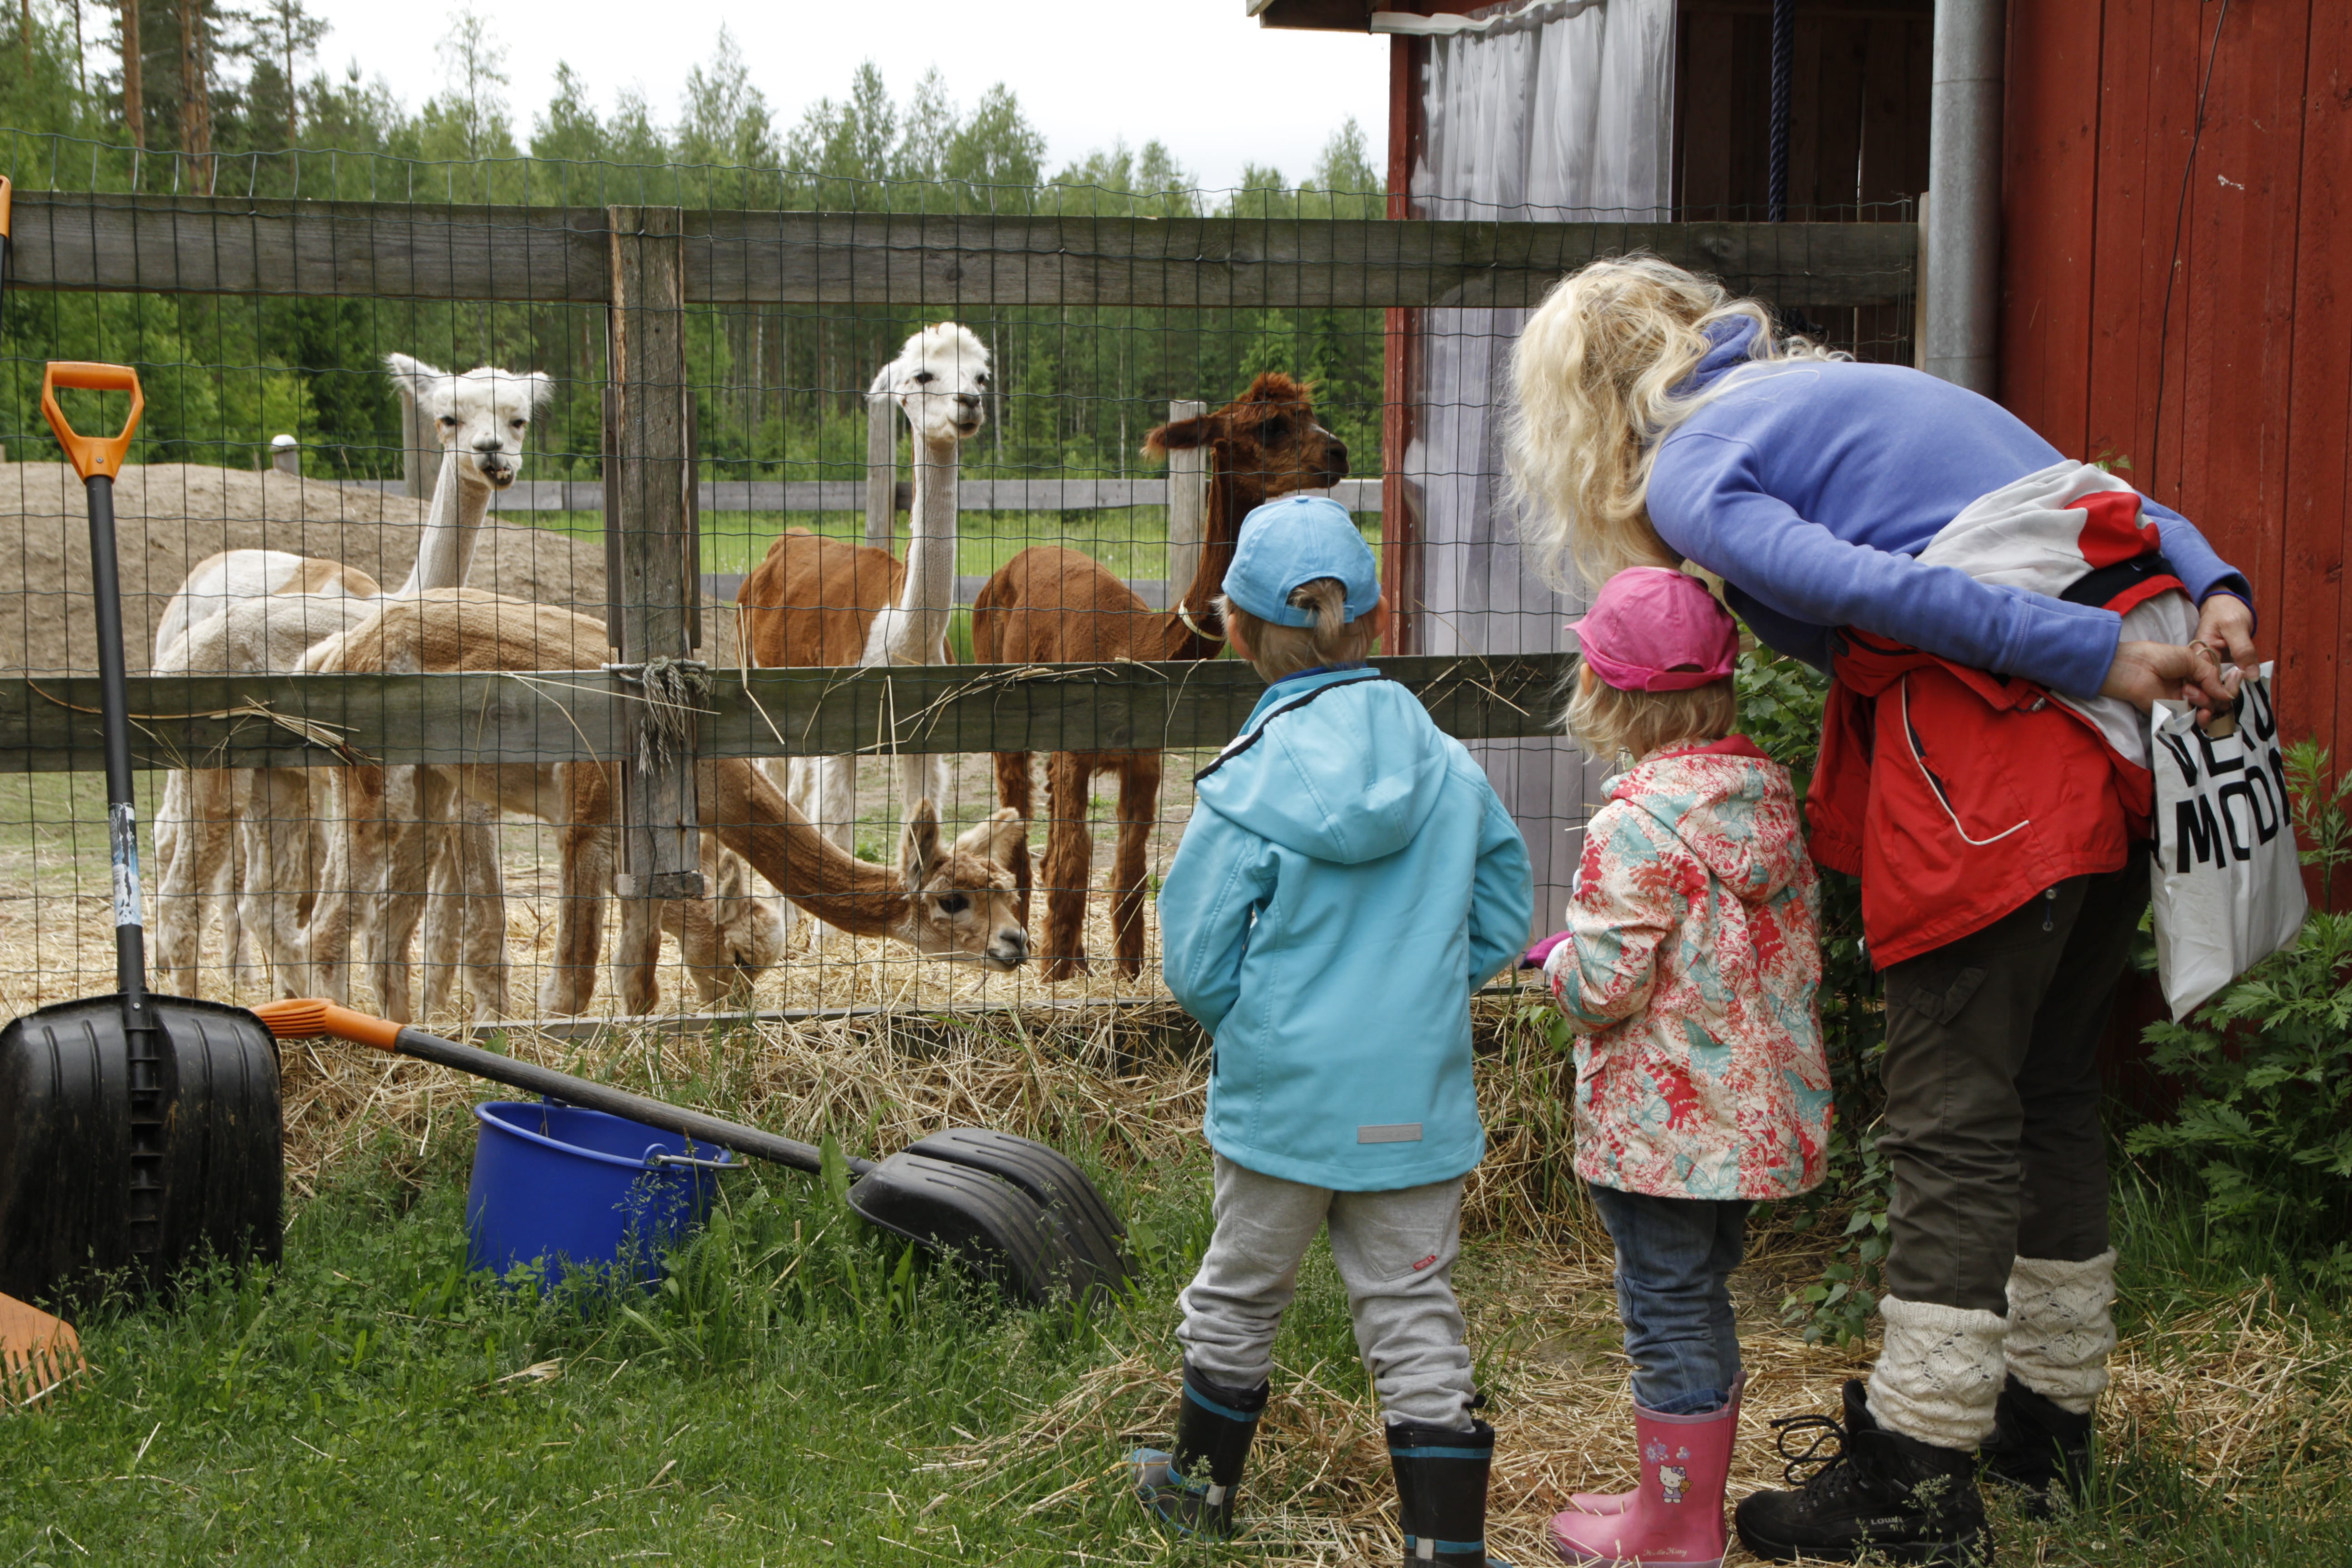 Children and an adult watching an alpaca.